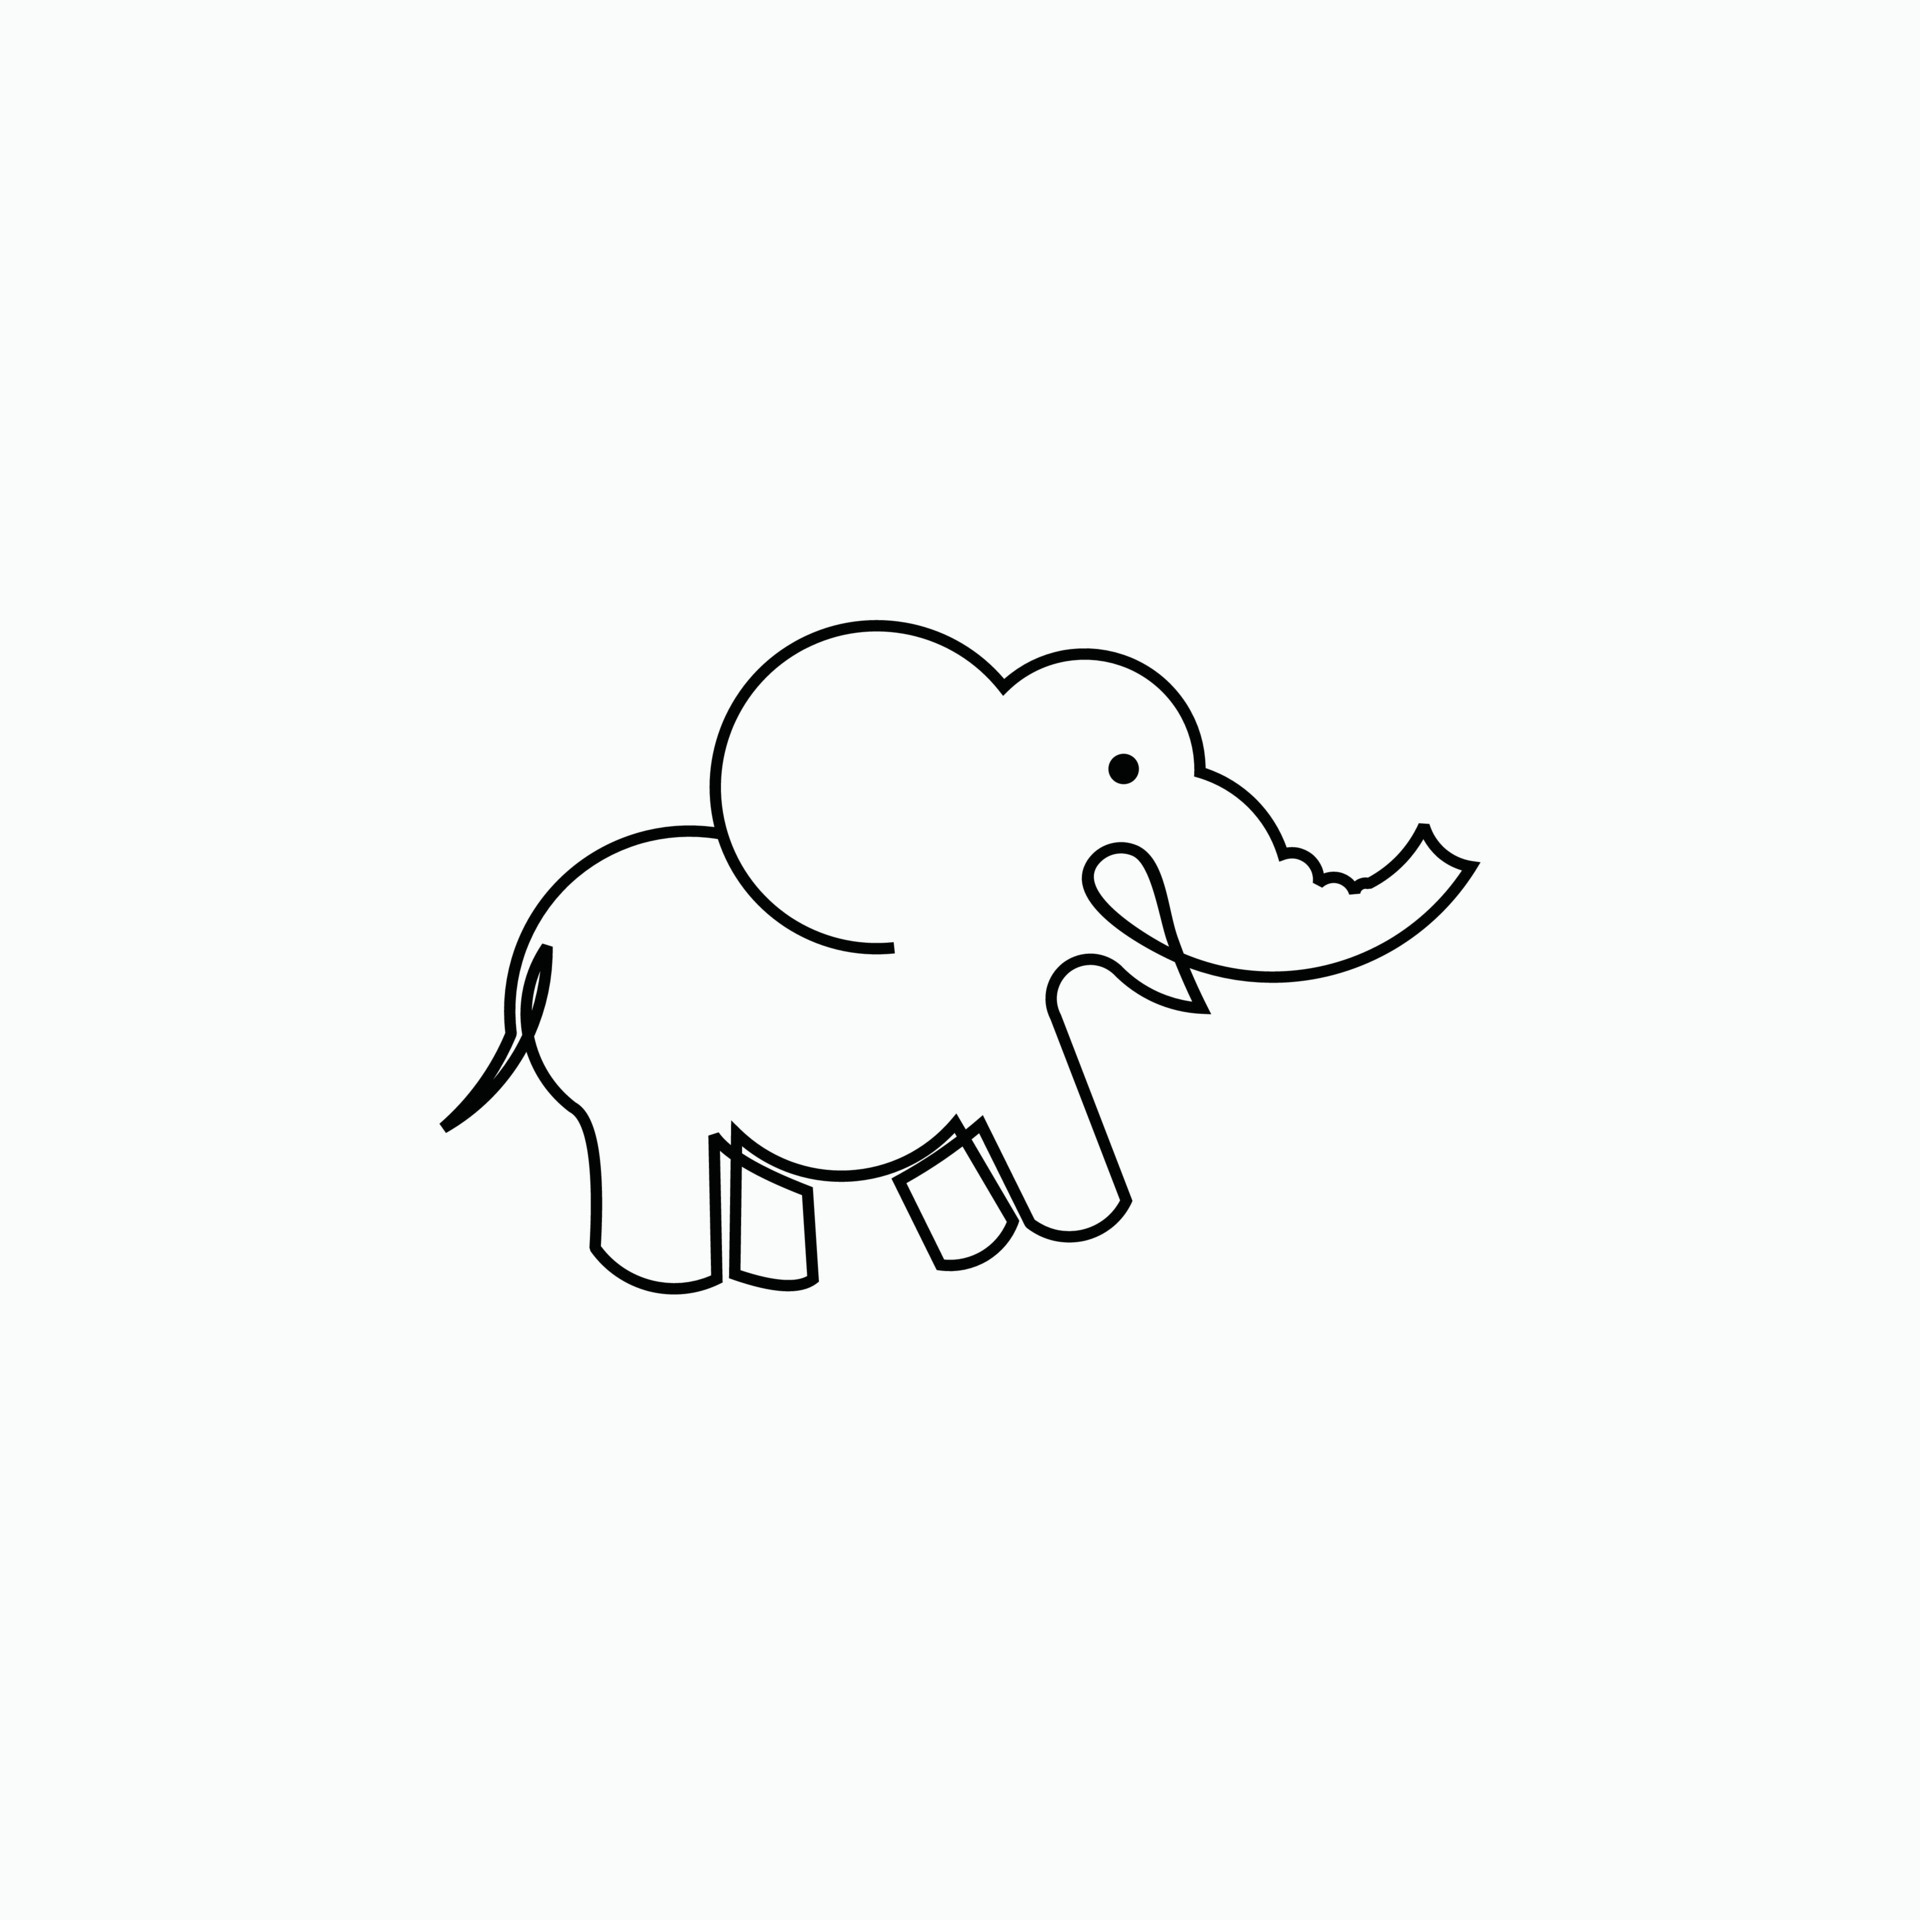 Cute line Elephant Cartoon Animal 7524042 Vector Art at Vecteezy